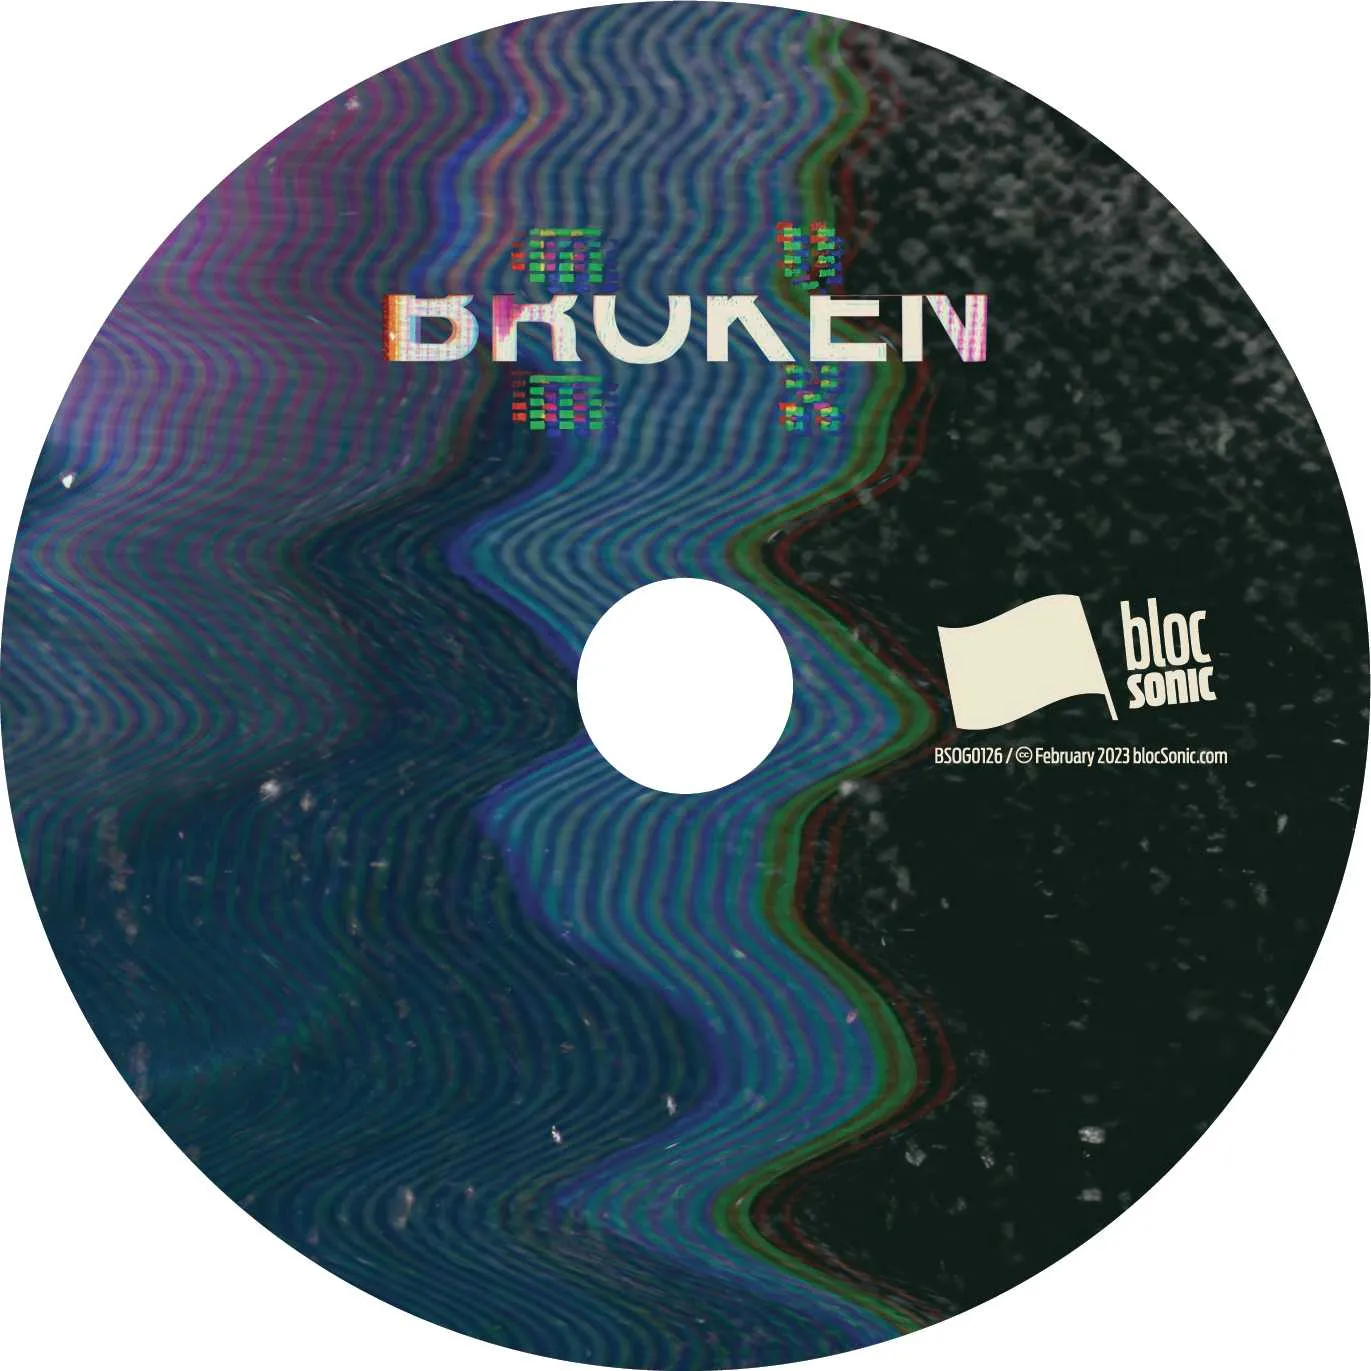 Album disc for “Broken” by MVMX